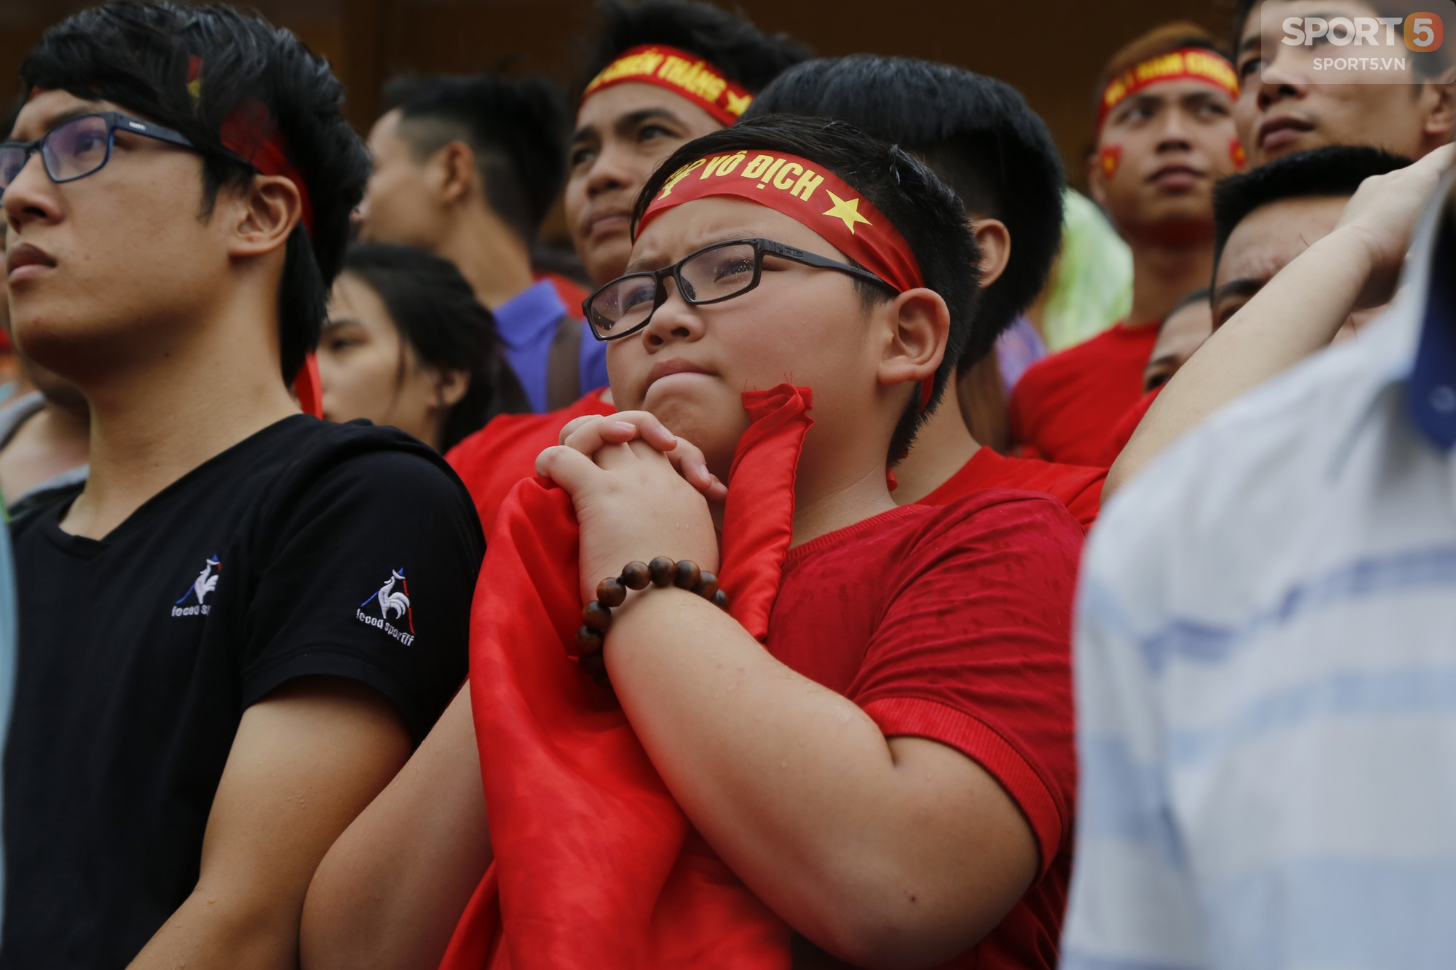 Mặc kệ thắng thua, mưa gió, người hâm mộ vẫn cháy hết mình vì một Olympic Việt Nam bất khuất - Ảnh 6.